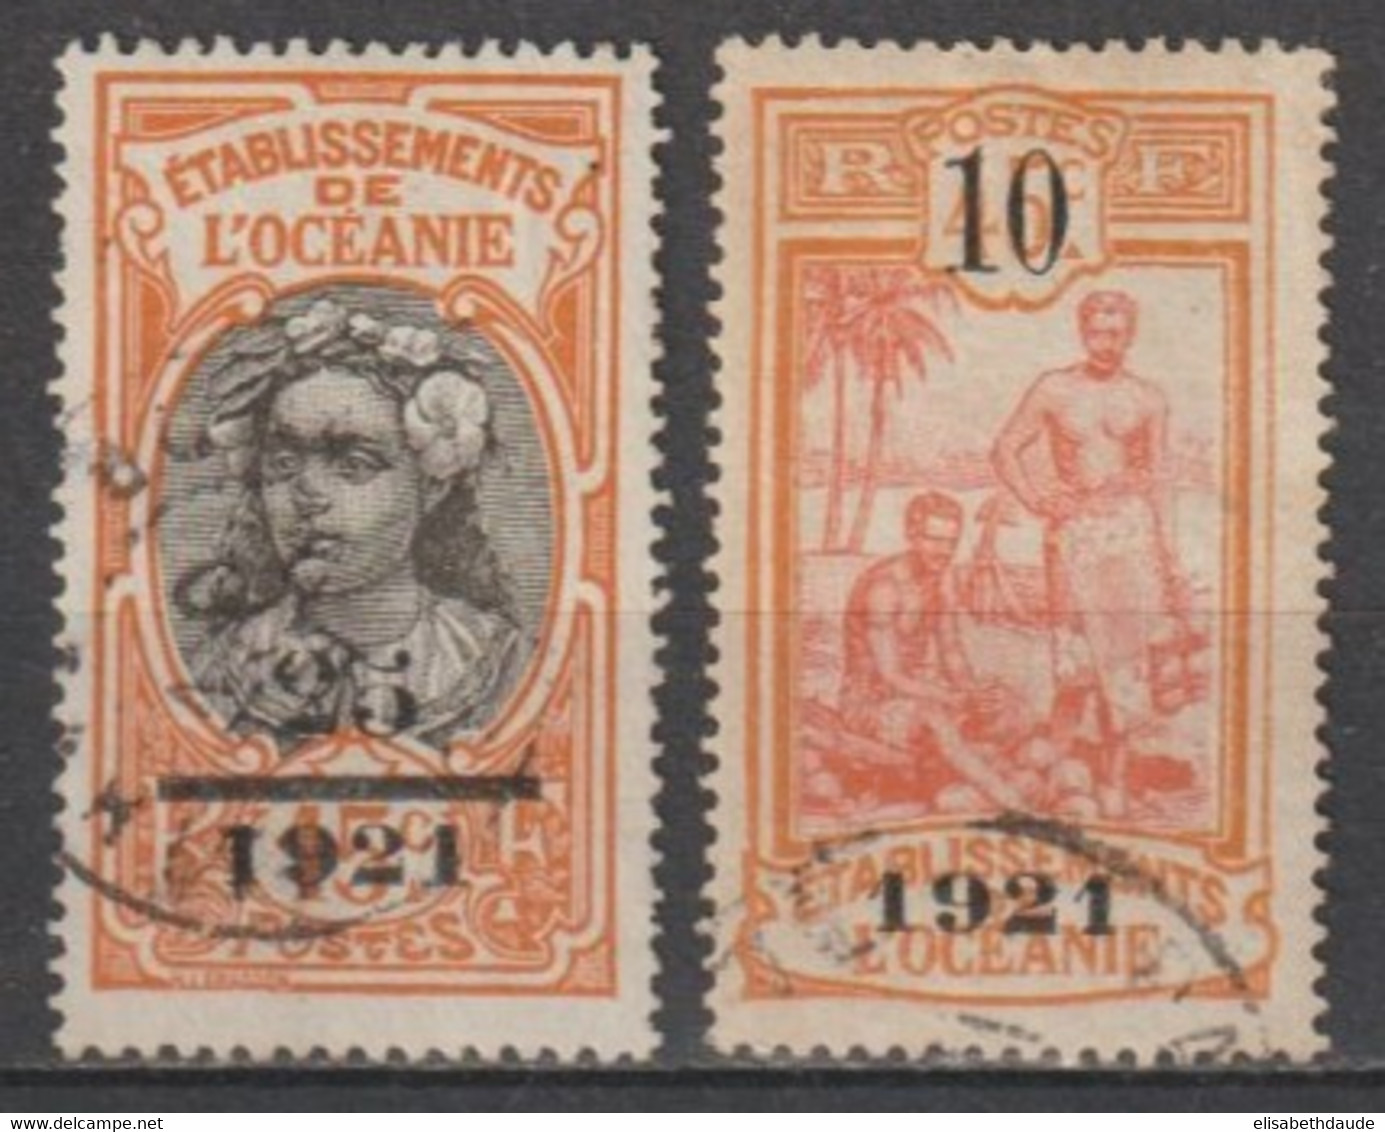 OCEANIE - 1921 - YVERT N°45/46 OBLITERES - COTE = 90 EUR - Gebruikt